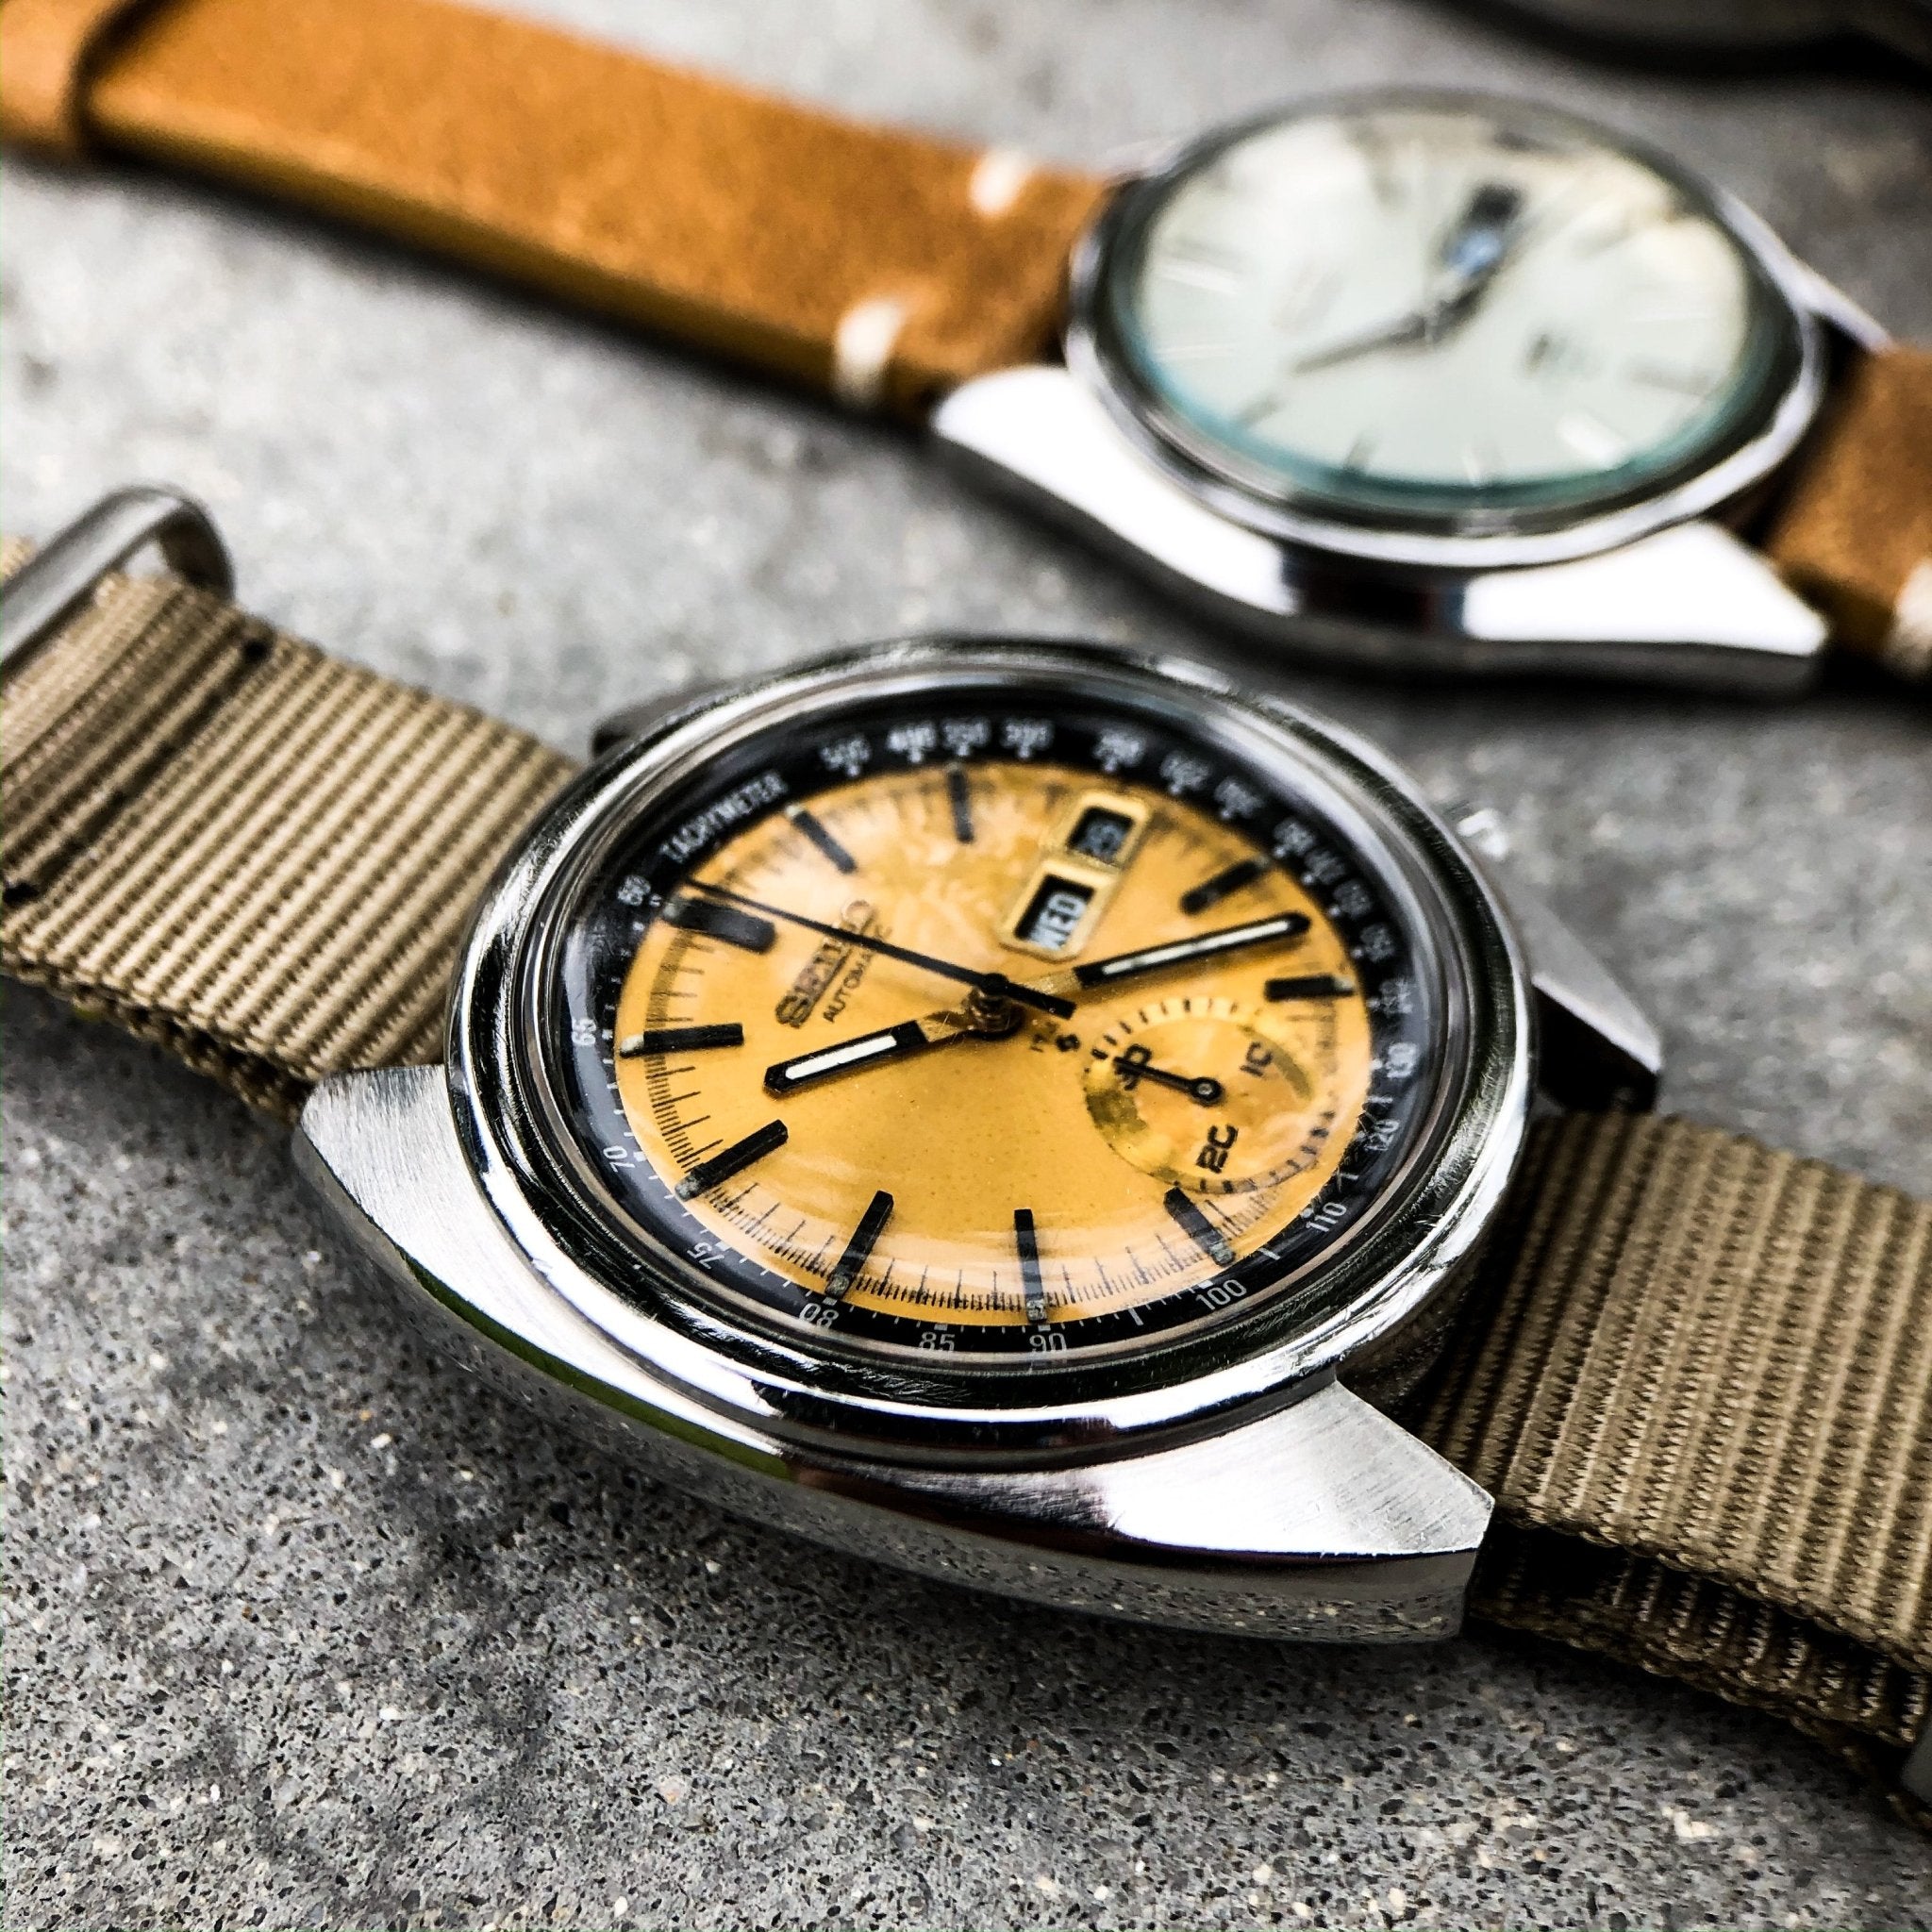 Taking apart Seiko's legendary 6139 chronograph movement - Samurai Vintage Co.